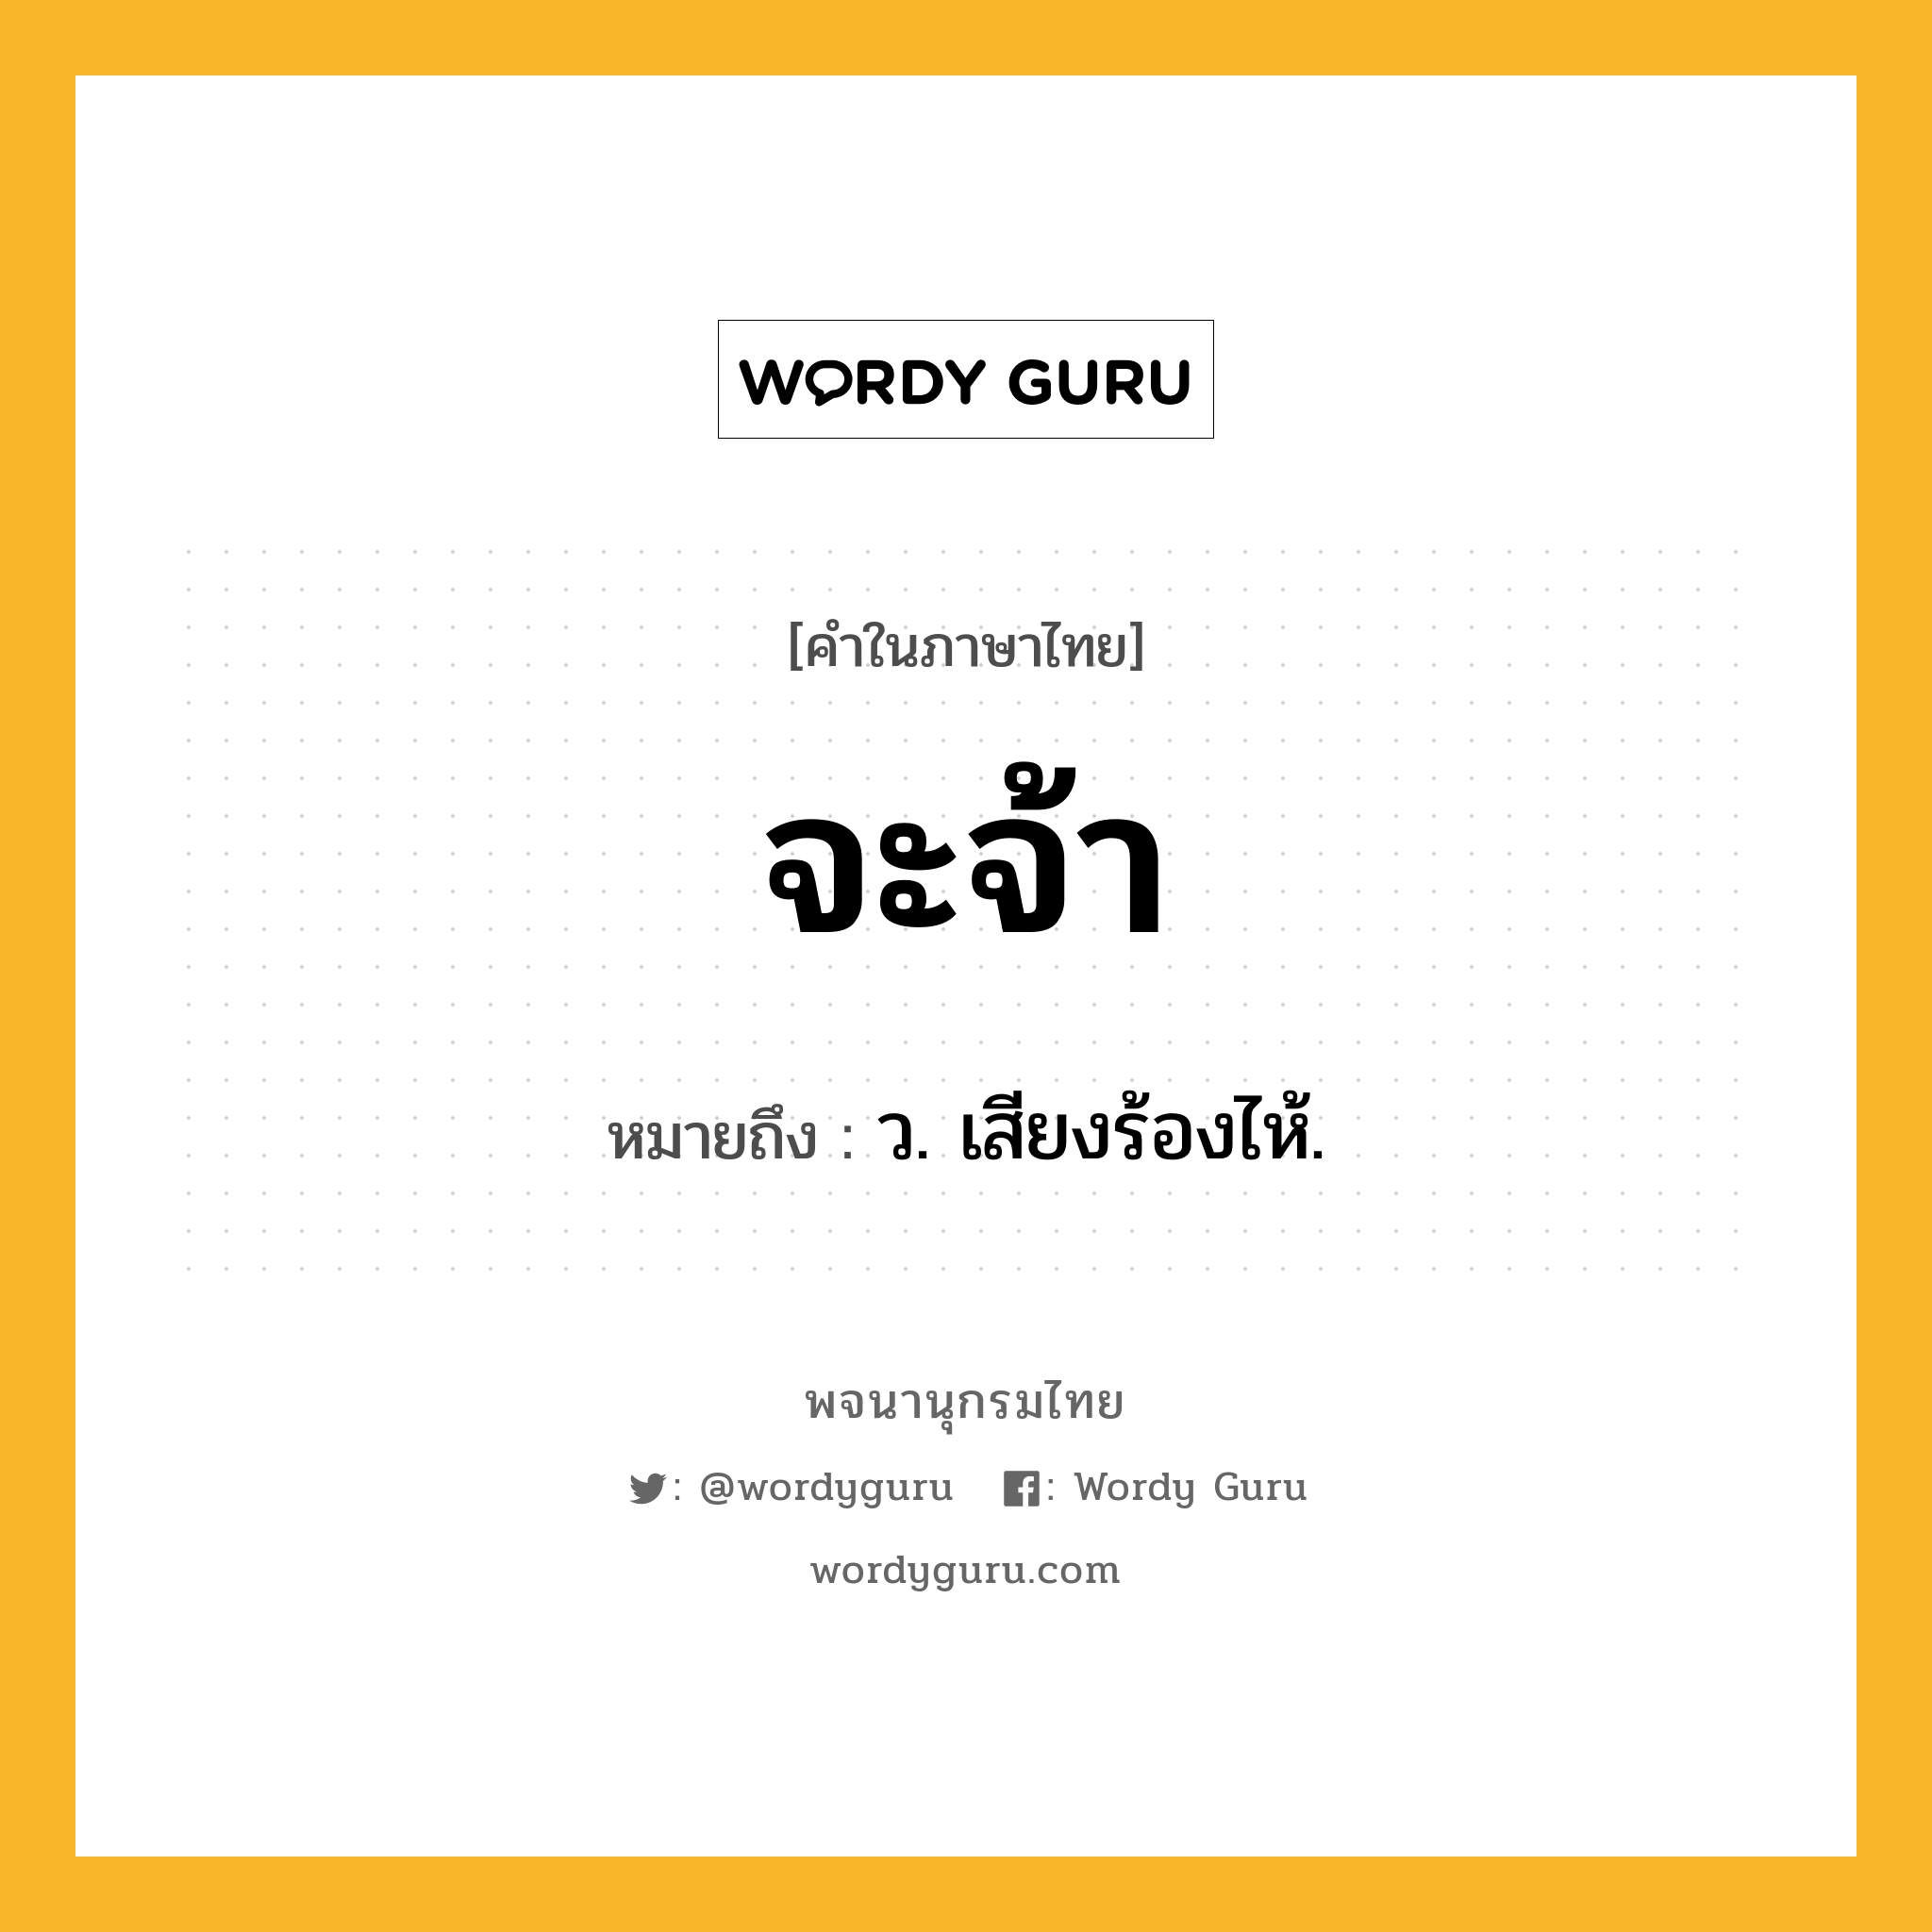 จะจ้า ความหมาย หมายถึงอะไร?, คำในภาษาไทย จะจ้า หมายถึง ว. เสียงร้องไห้.